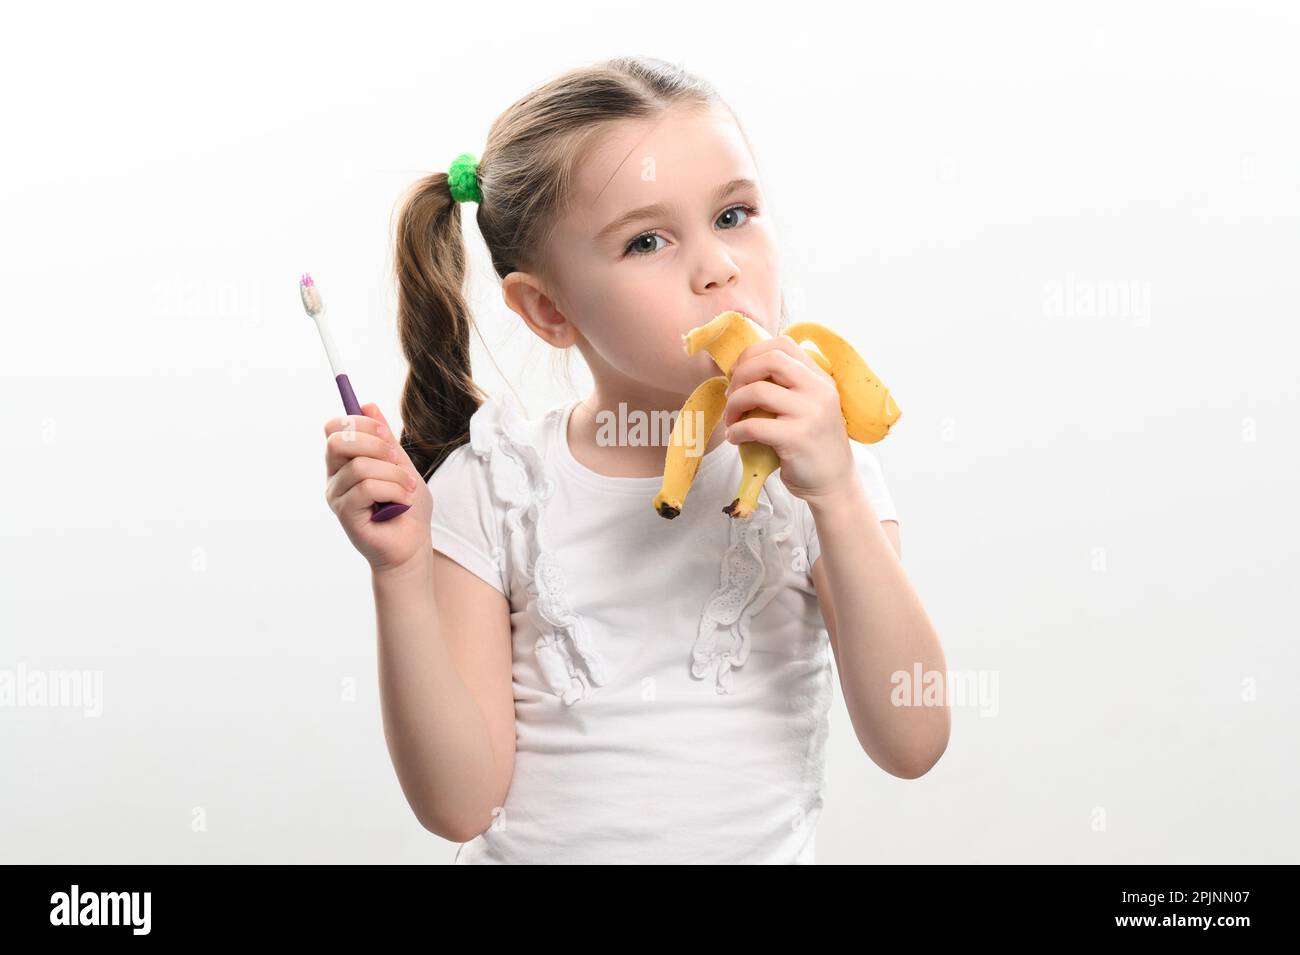 Une petite fille mange une banane et tient une brosse à dents dans ses mains, photo de studio sur un fond blanc, une banane aide contre les caries, une idée pour les dents Banque D'Images